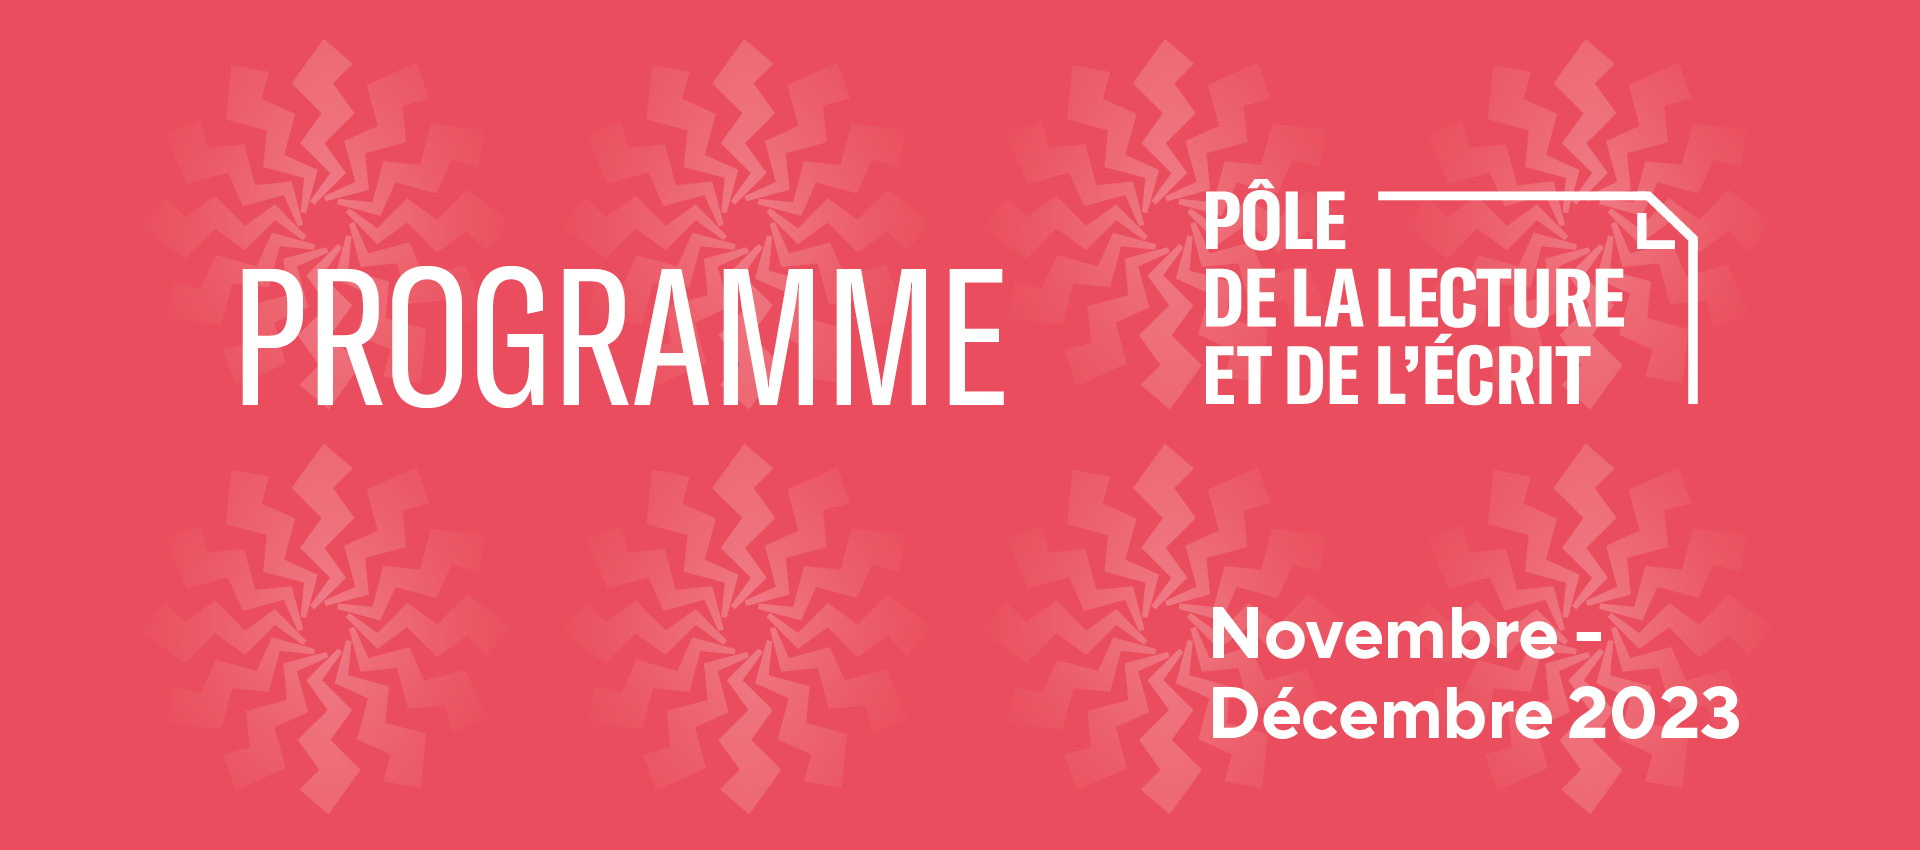 Slider d'illustration du programme novembre-décembre 2023 du Pôle de la lecture et de l'écrit